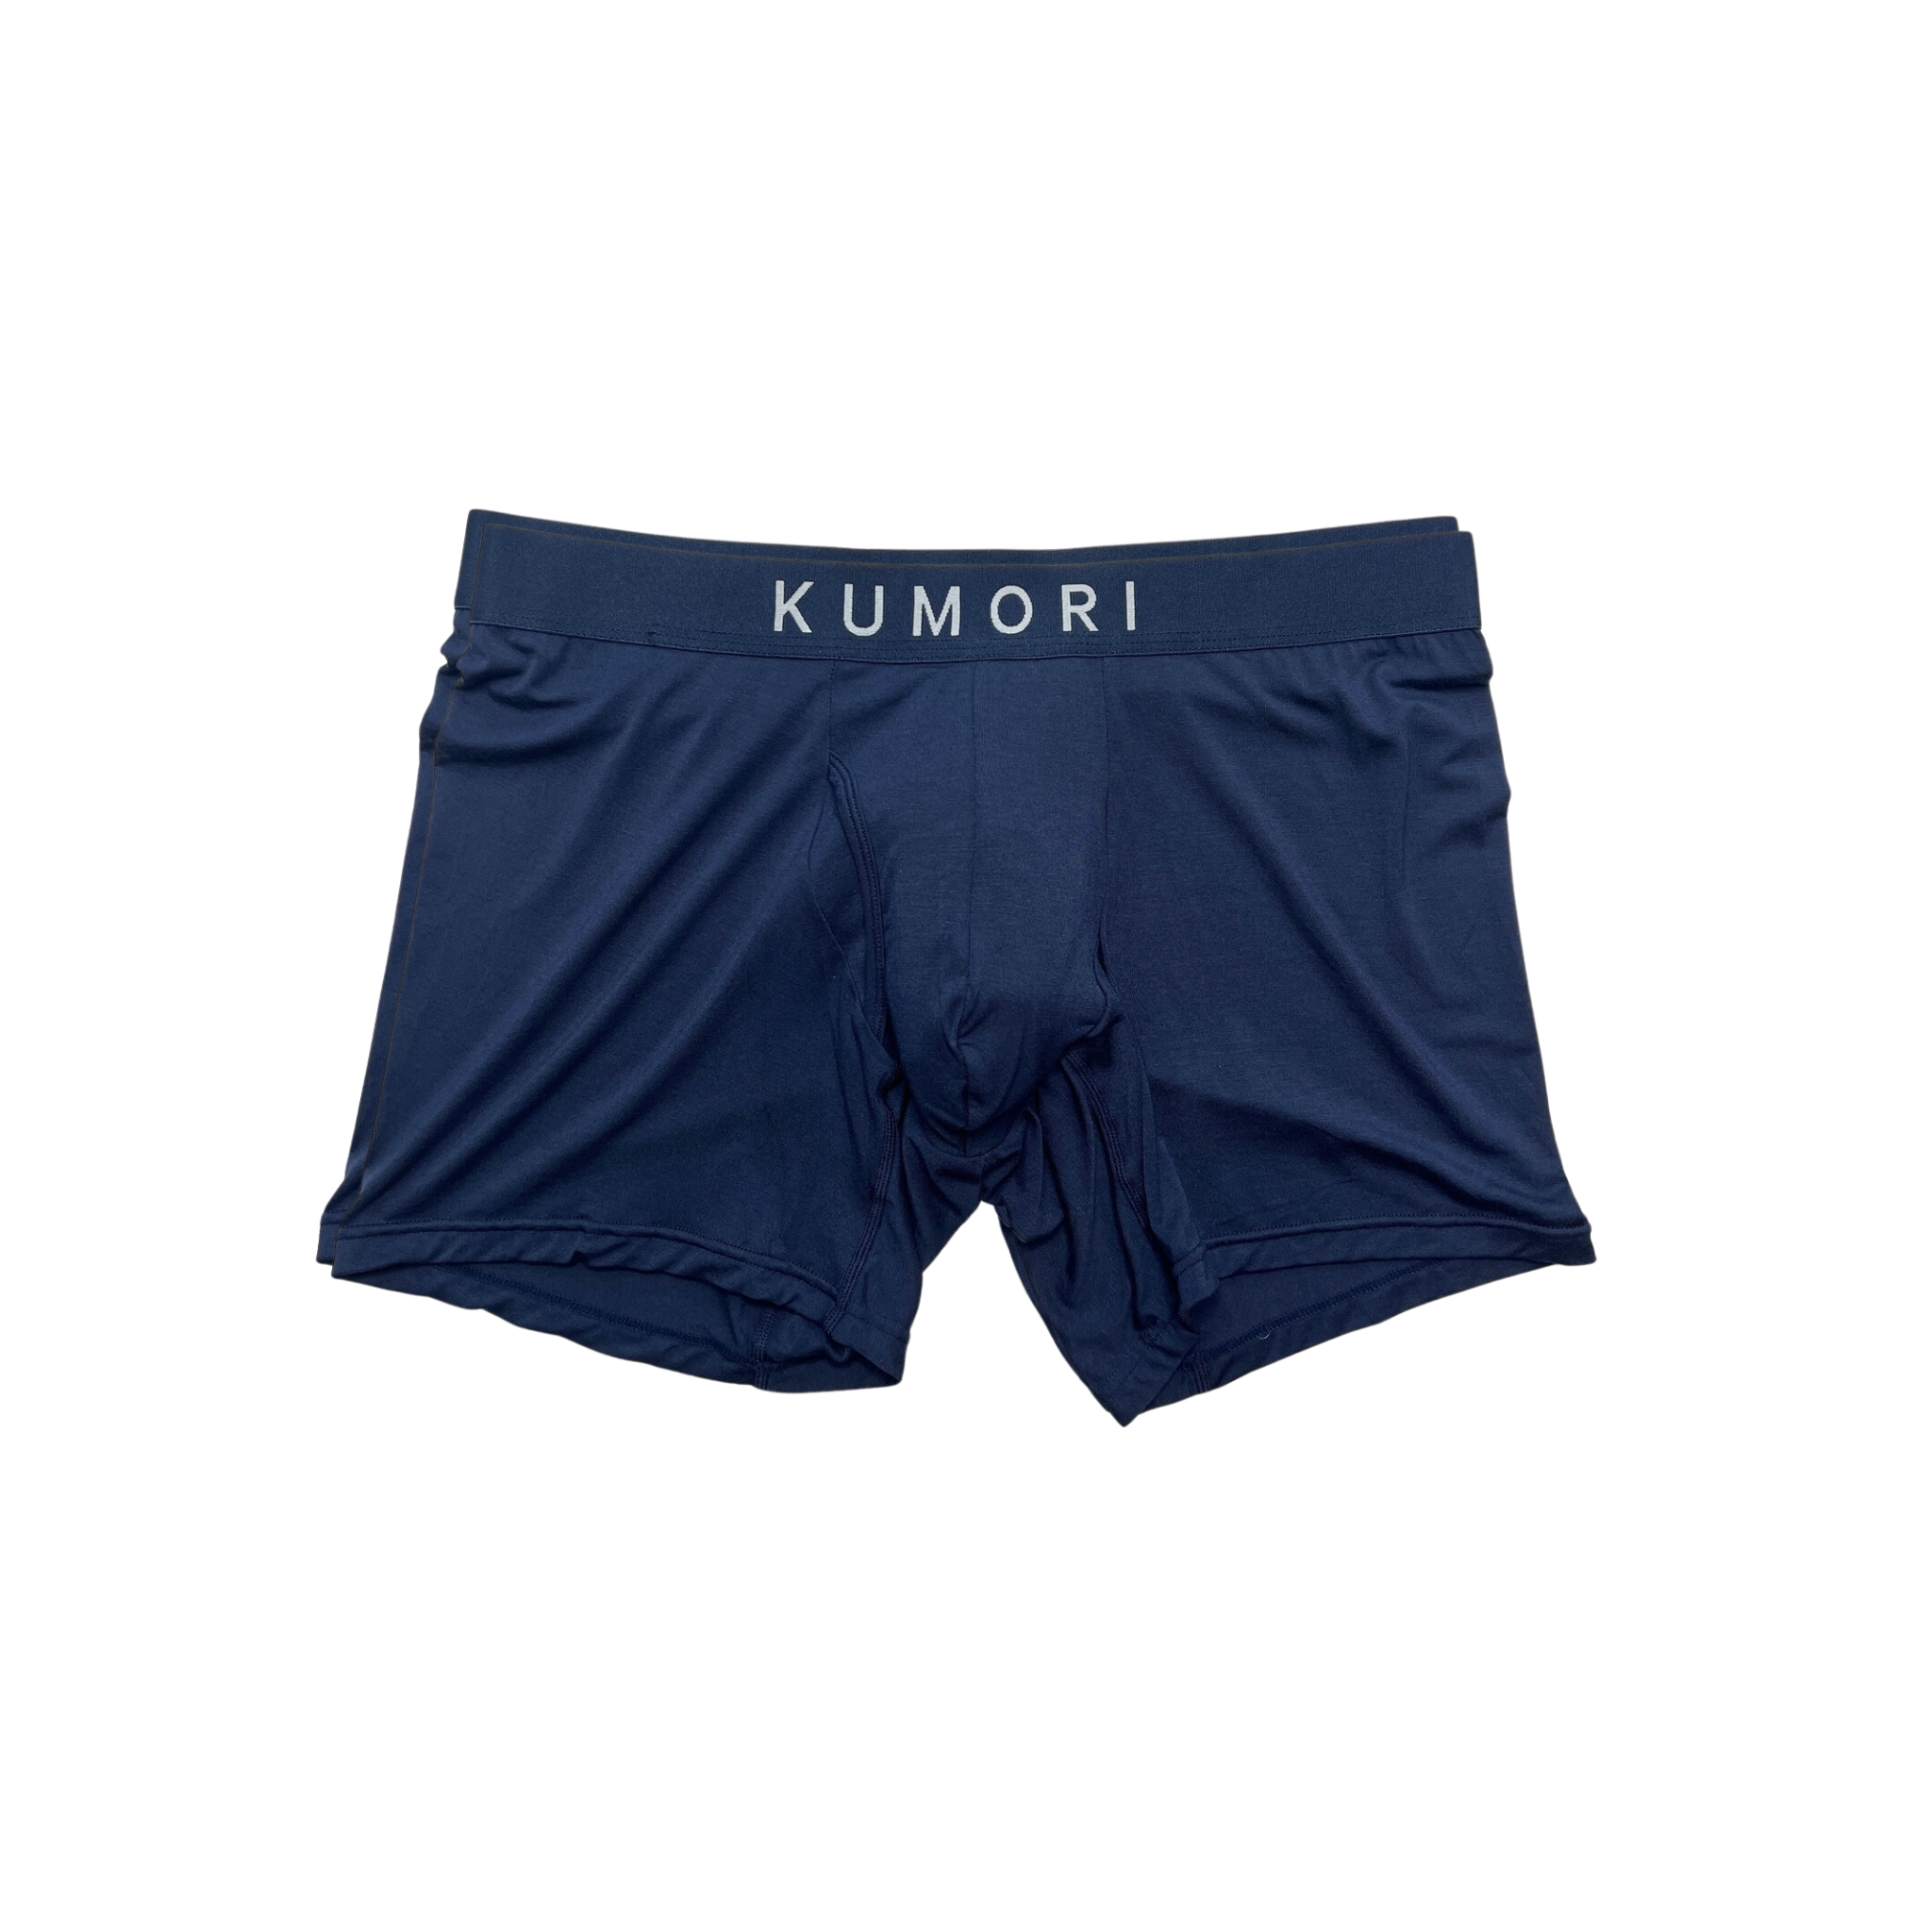 Bamboo boxer briefs – Kumori